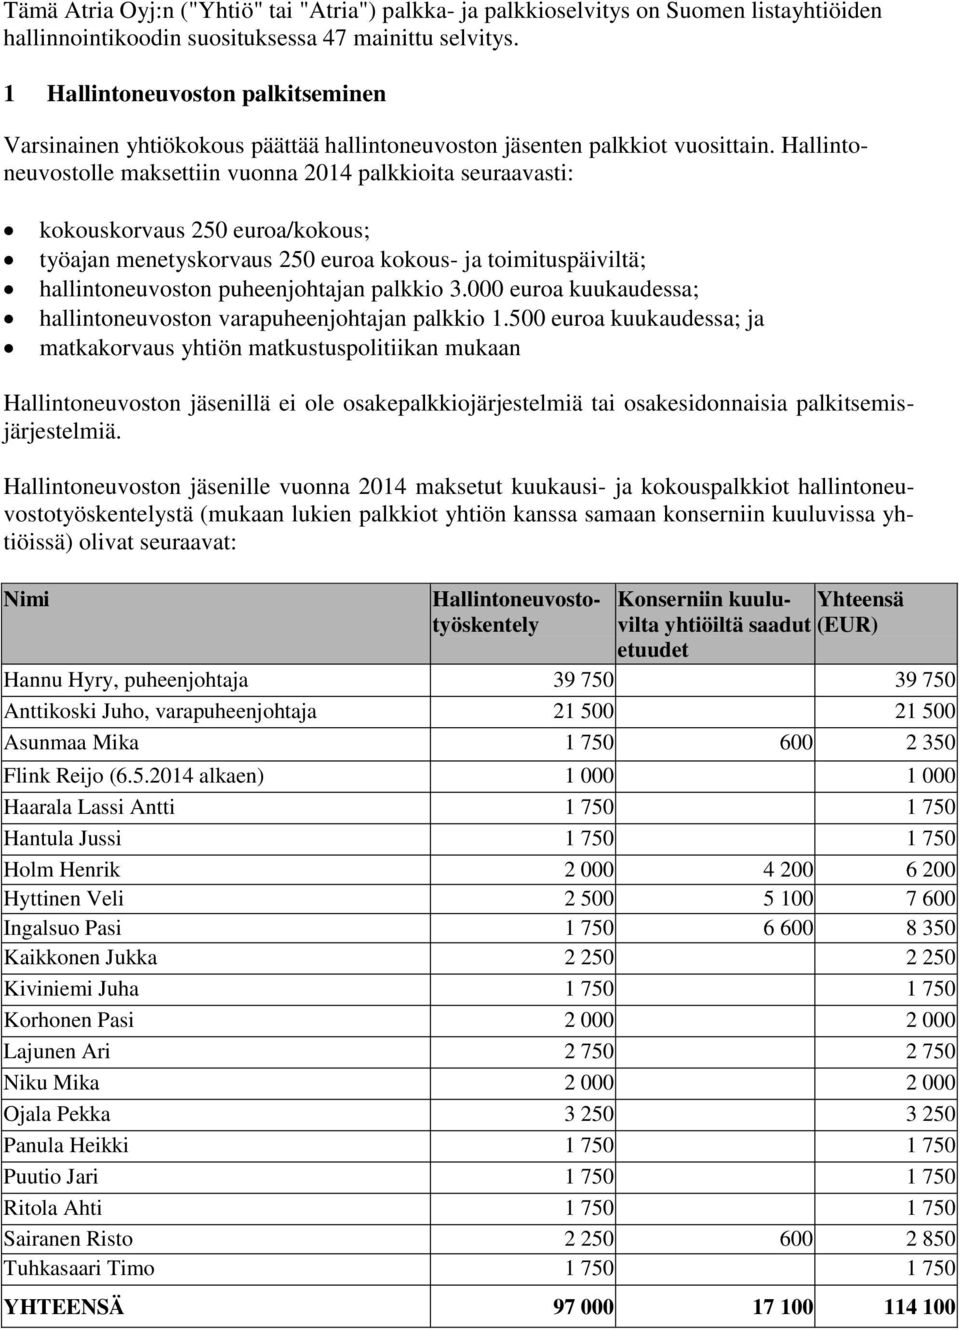 Hallintoneuvostolle maksettiin vuonna 2014 palkkioita seuraavasti: kokouskorvaus 250 euroa/kokous; työajan menetyskorvaus 250 euroa kokous- ja toimituspäiviltä; hallintoneuvoston puheenjohtajan